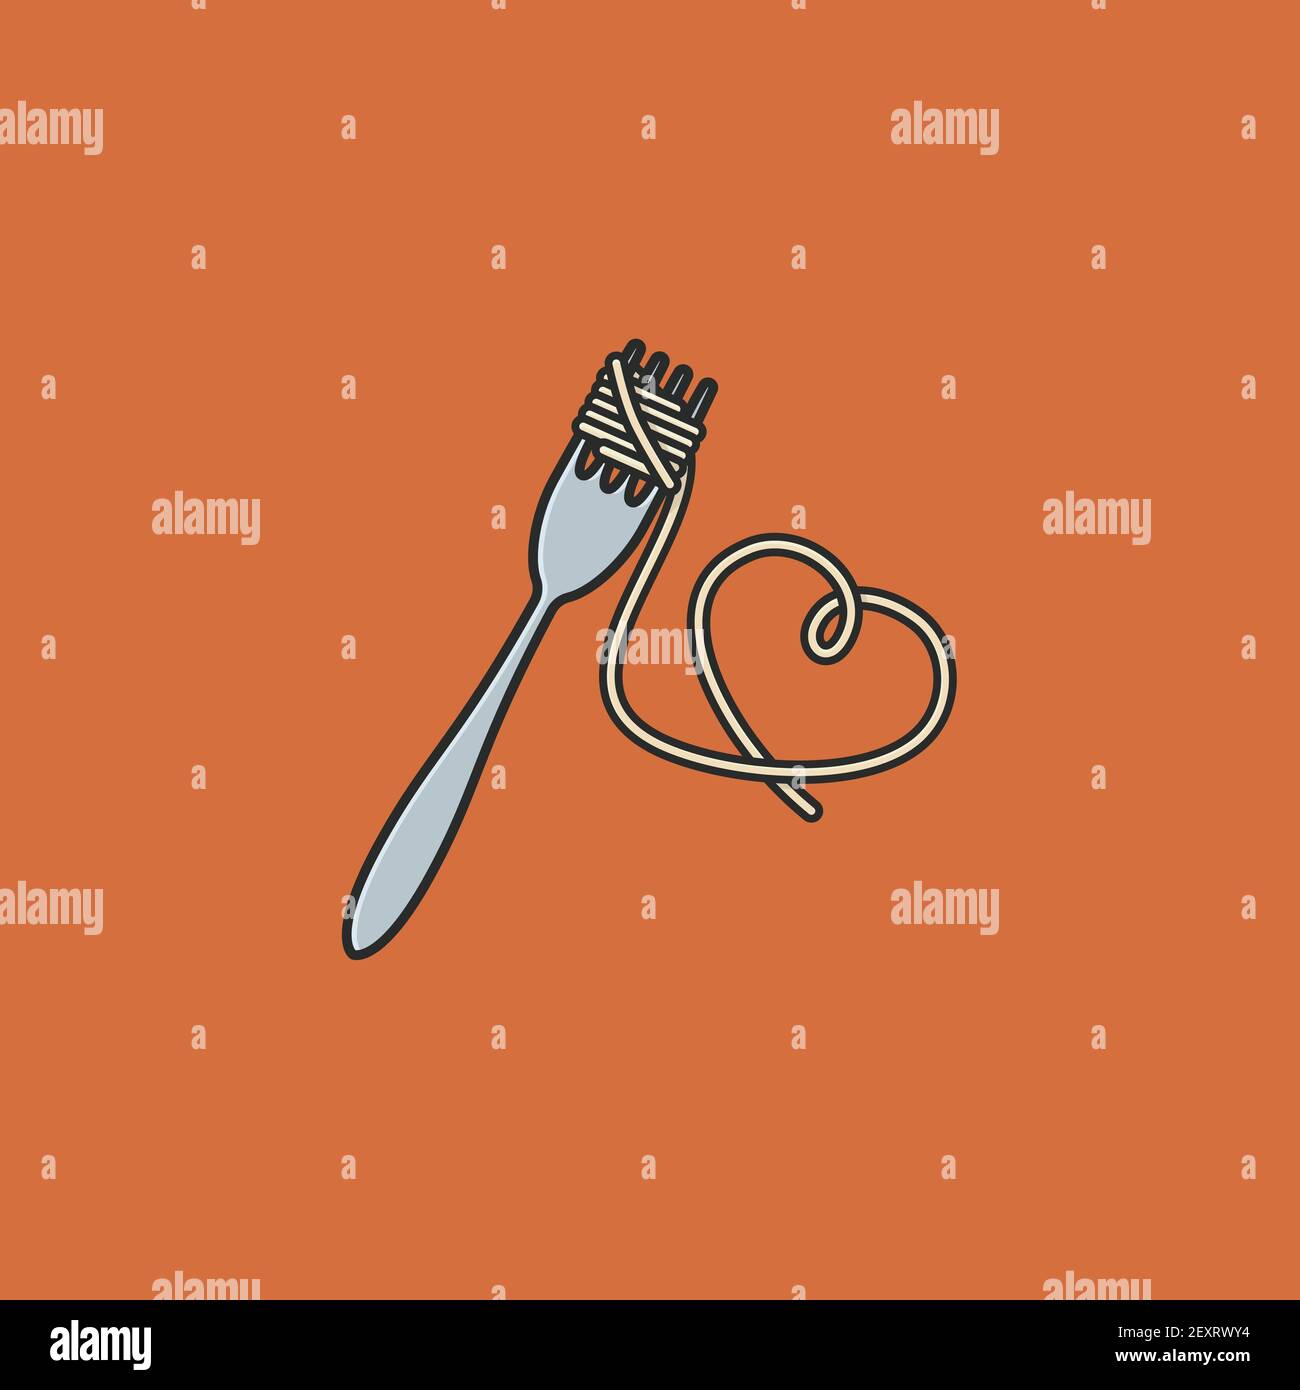 Pâtes spaghetti enveloppées autour de la fourchette et suspendues en forme de coeur Illustration vectorielle pour la Journée nationale des pâtes le 17 octobre Illustration de Vecteur